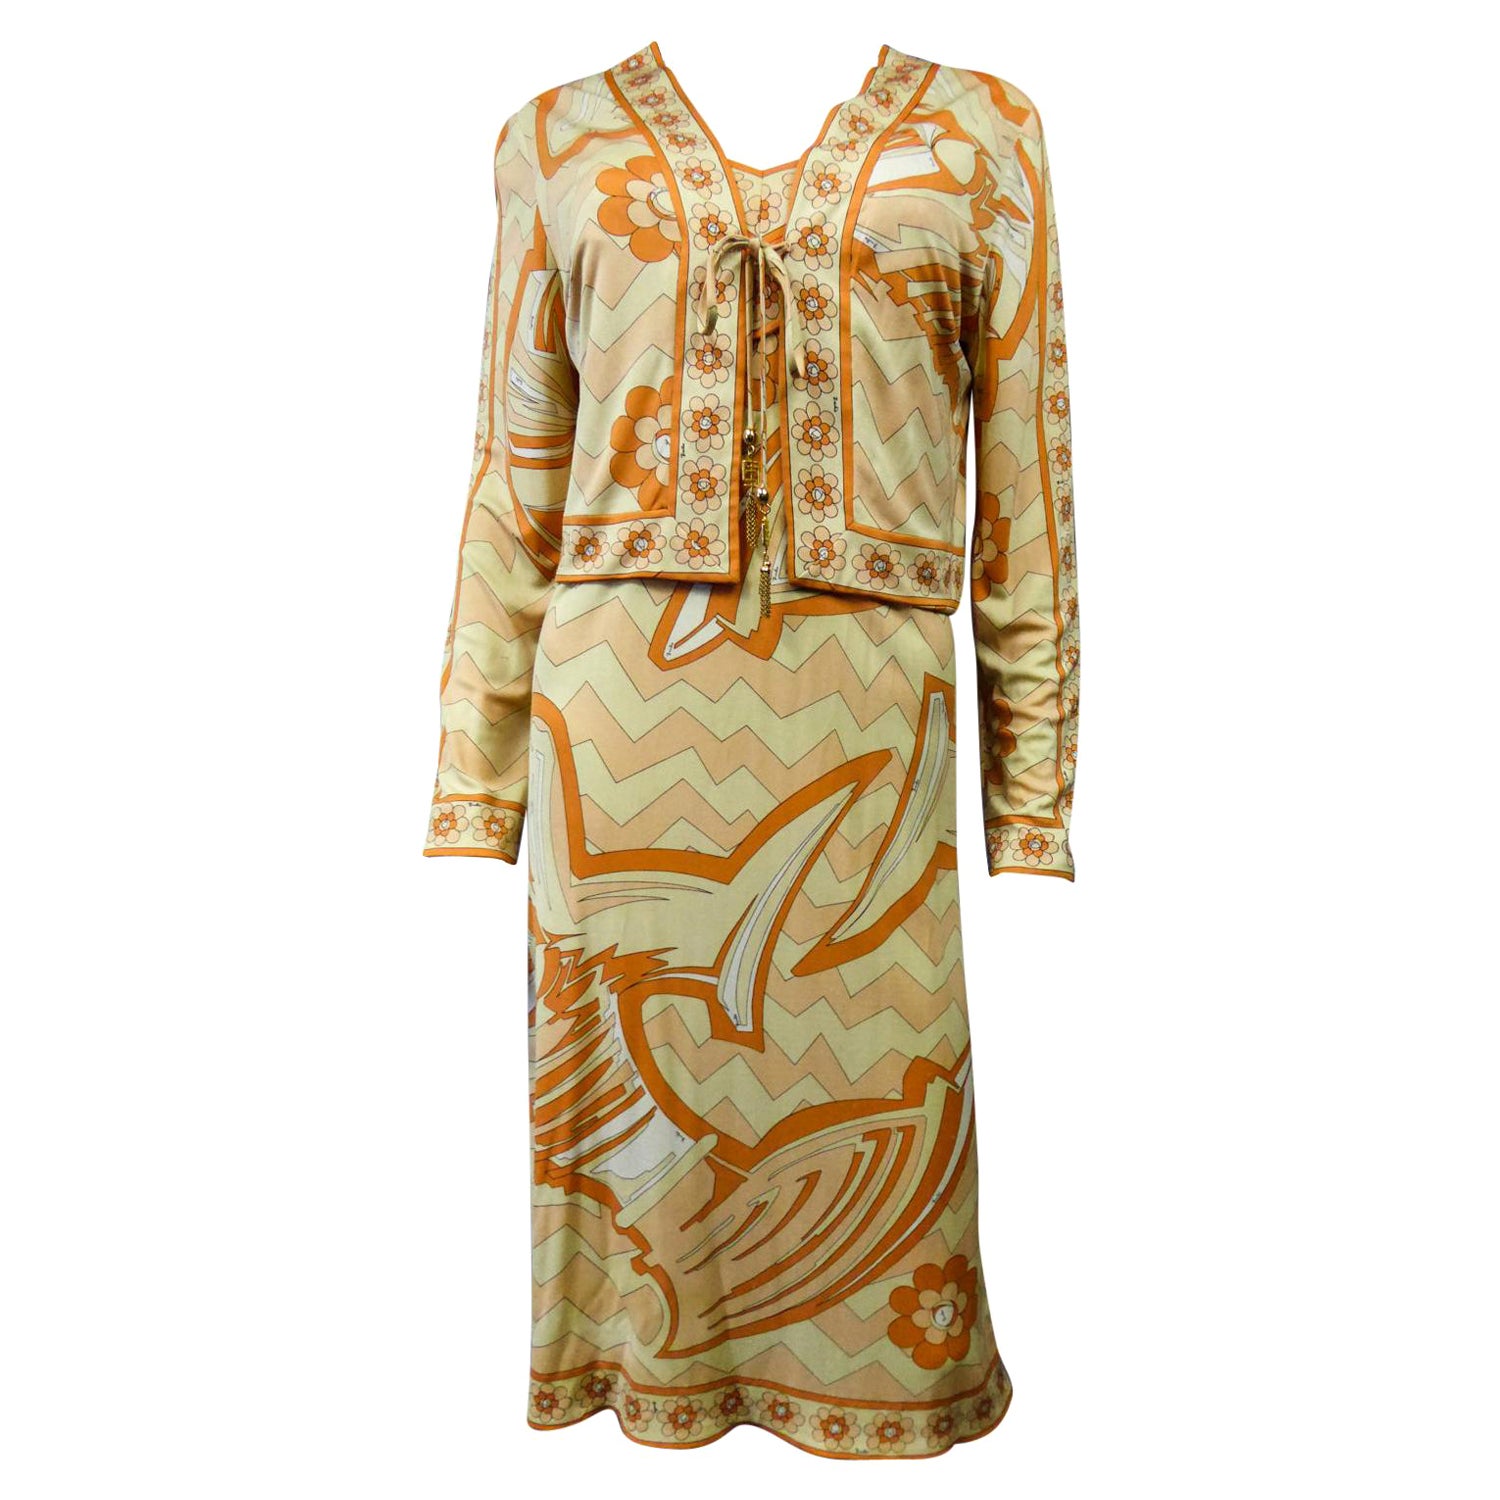 Emilio Pucci - Ensemble robe et gilet en jersey imprimé, circa 1960/1970